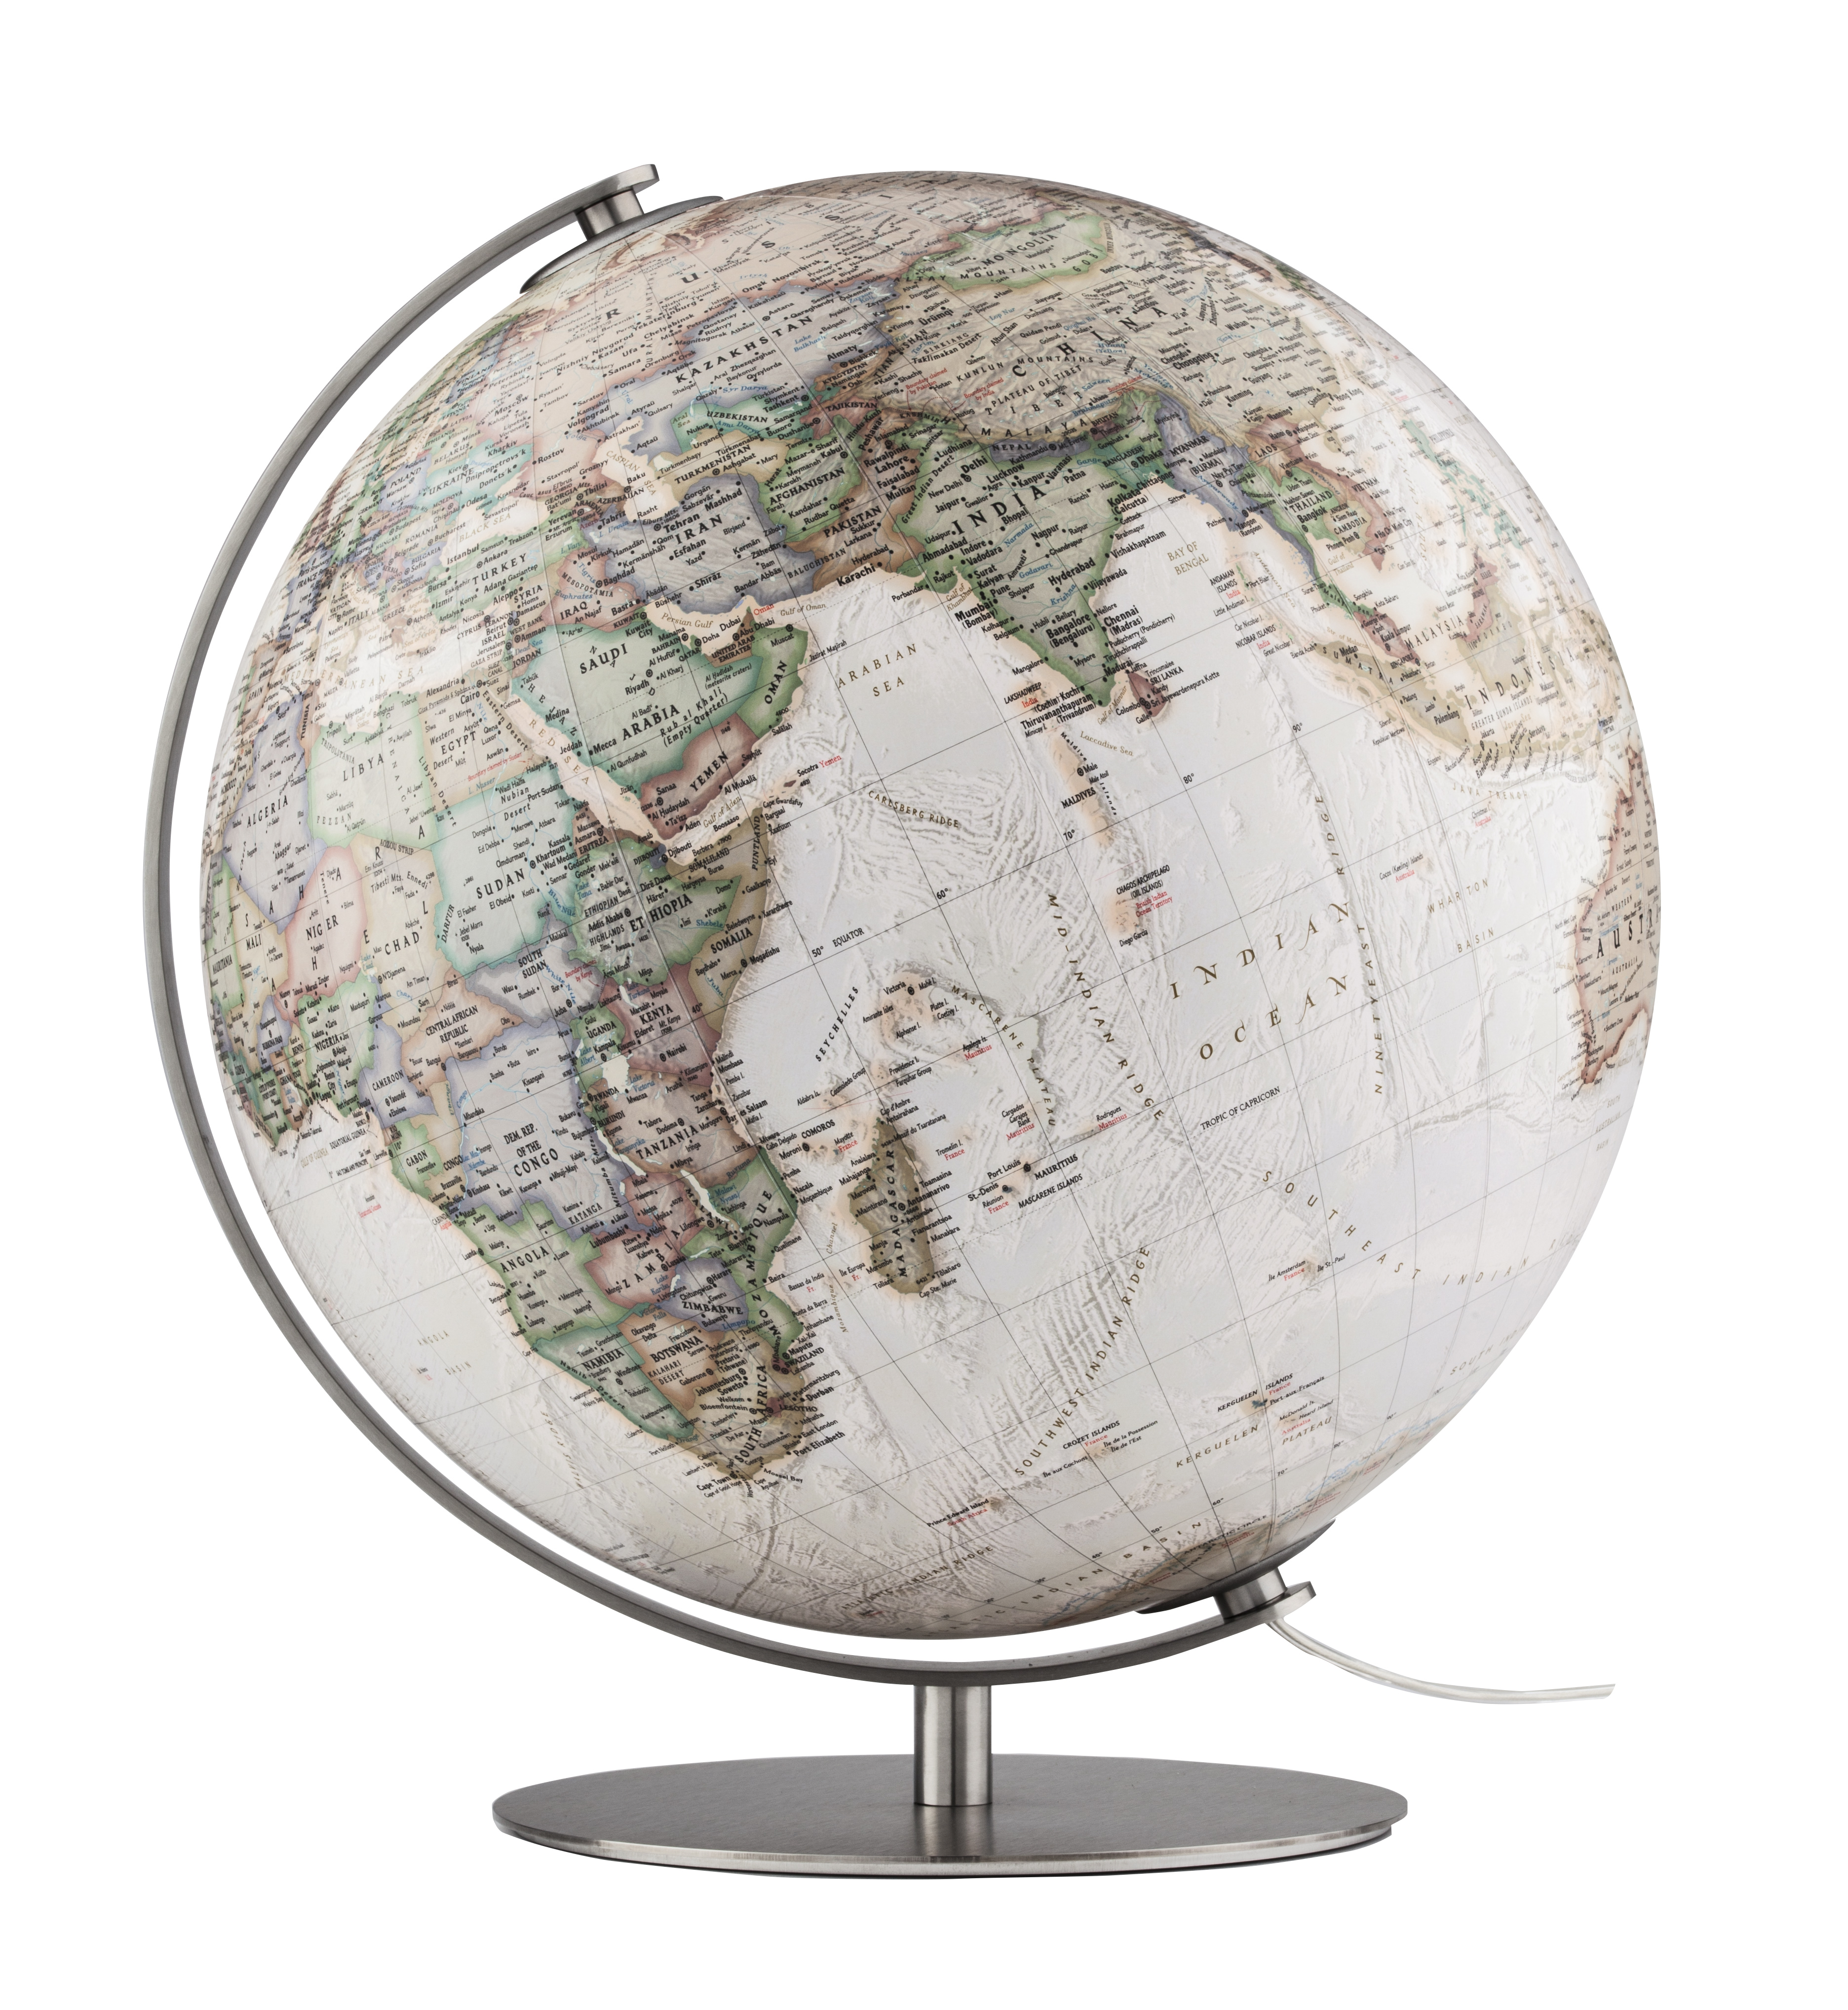 National Geographic Fusion 3703 Executive Globus Antik Design Handkaschiert  37cm Globe Erth World Tischglobus | Globus24.de - Ihr Onlineshop für Globen  aller Art